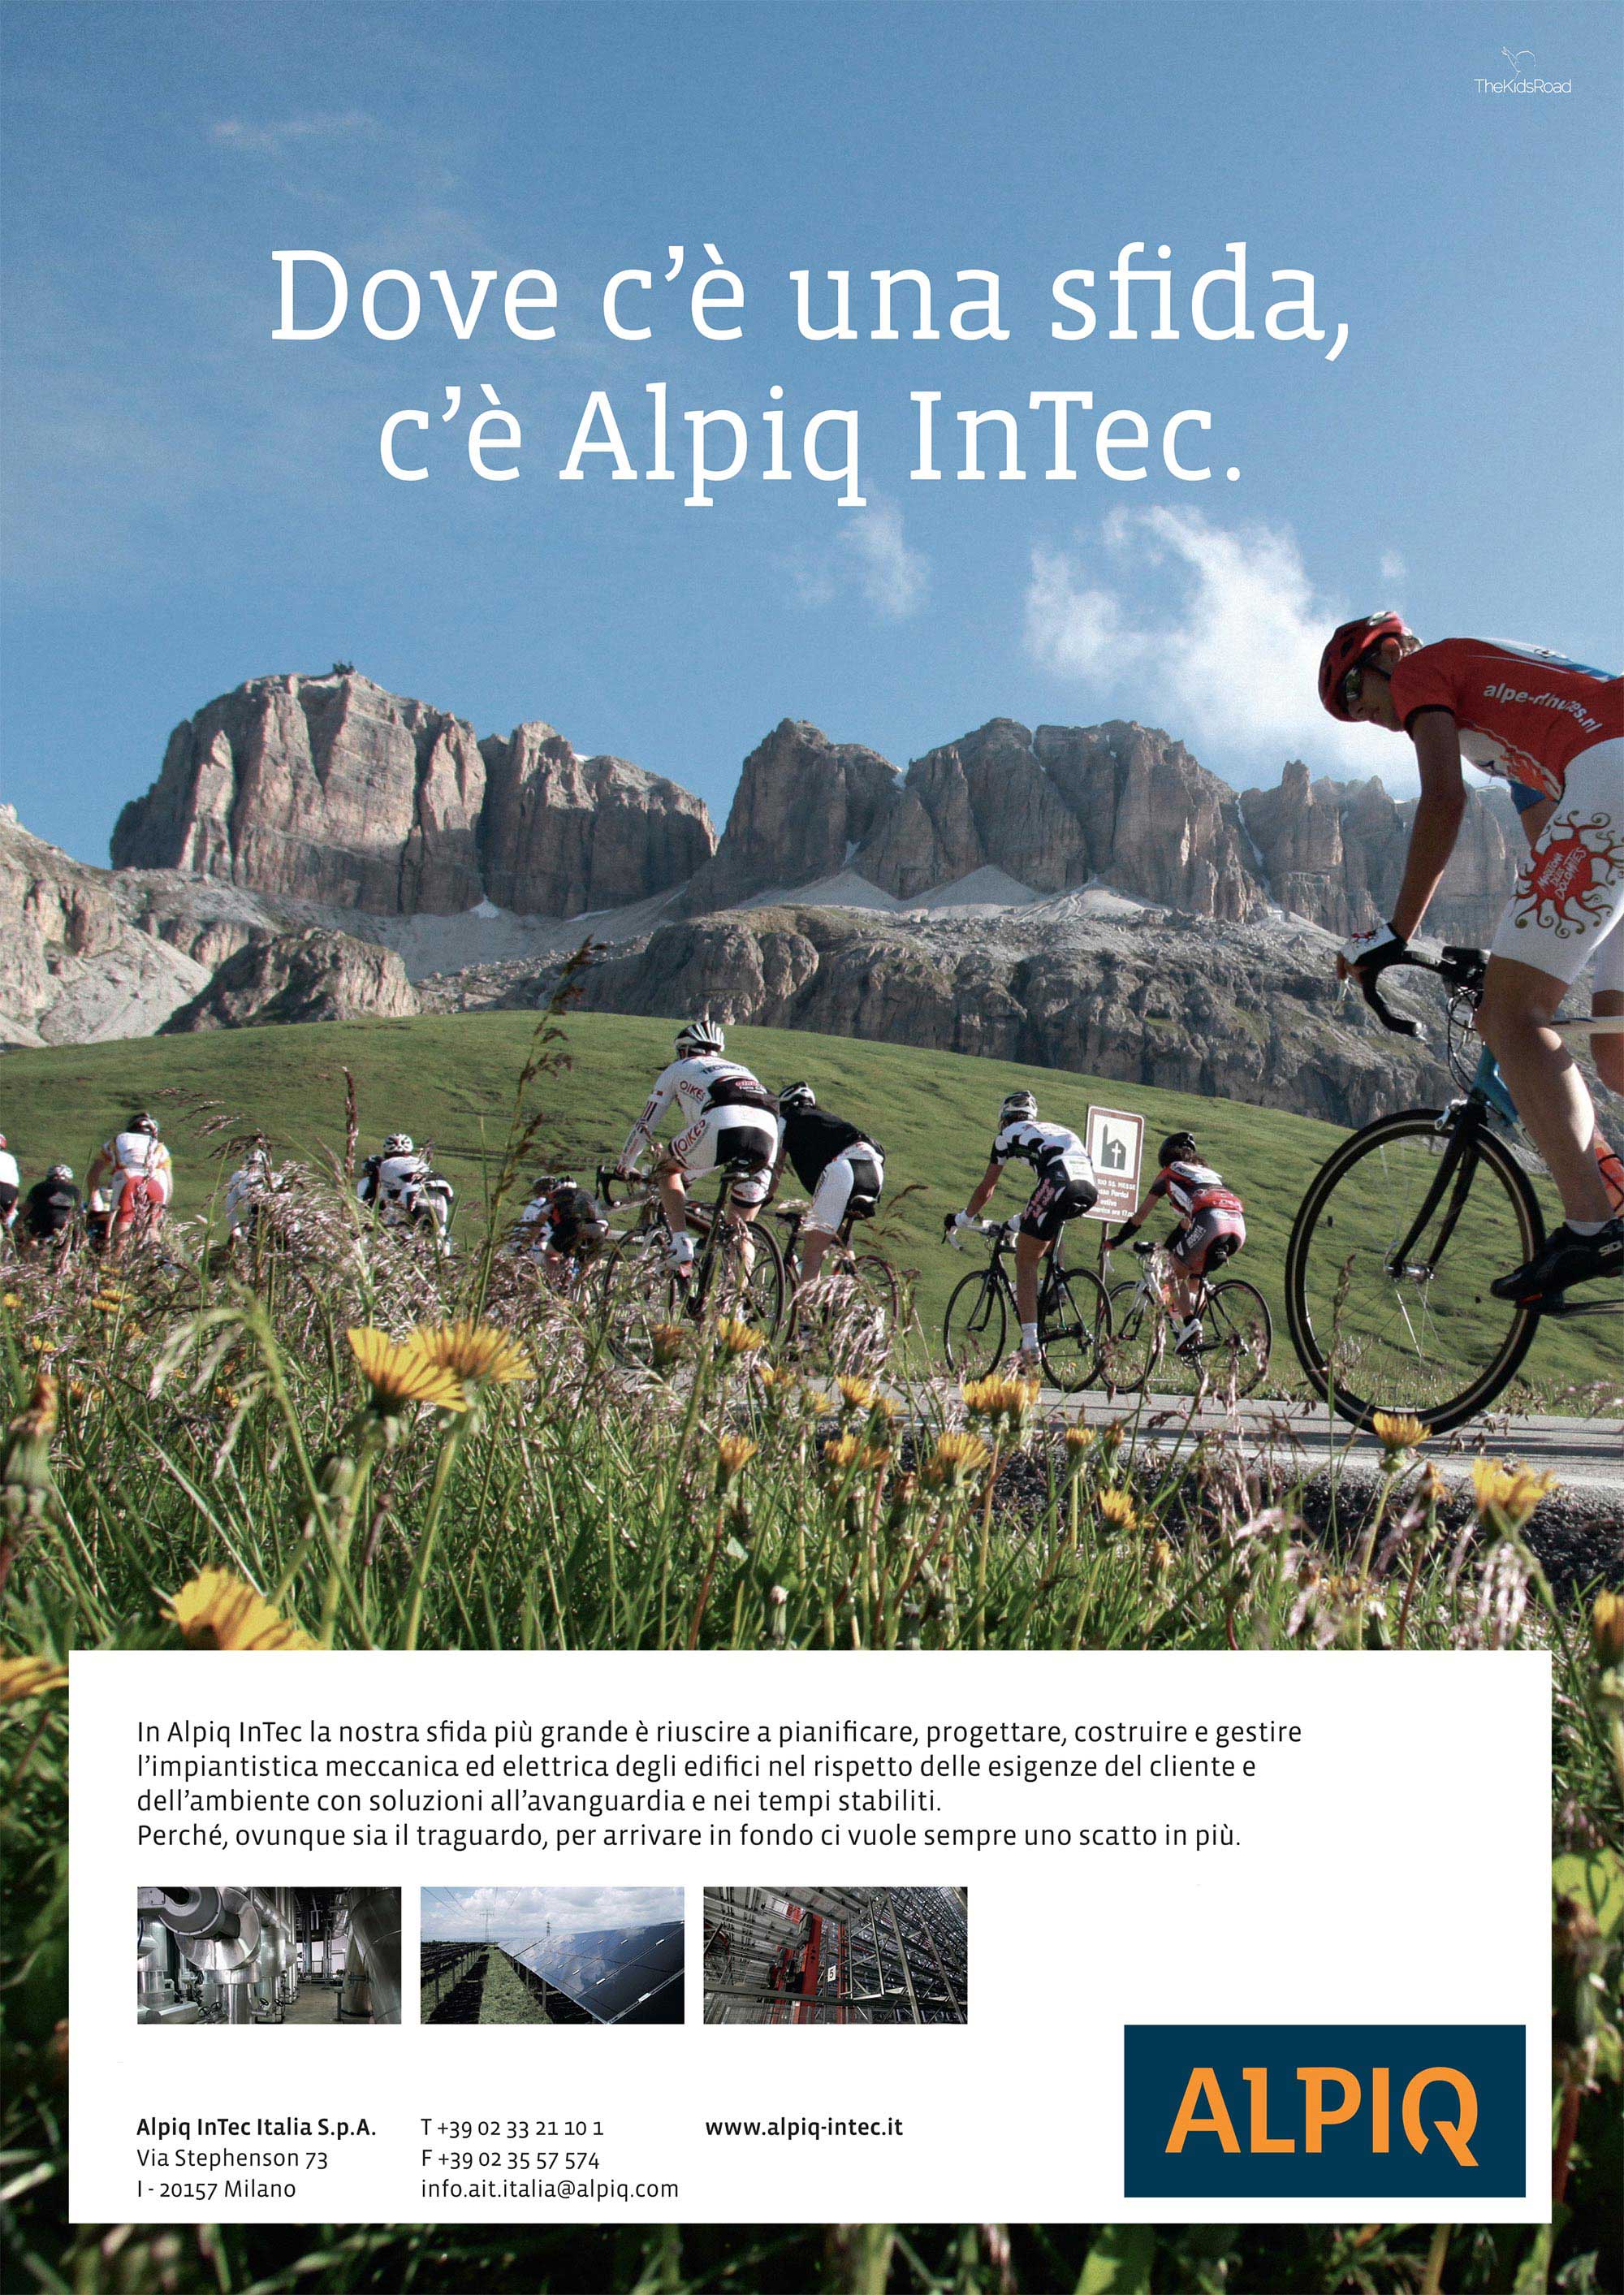 Alpiq InTech Italia